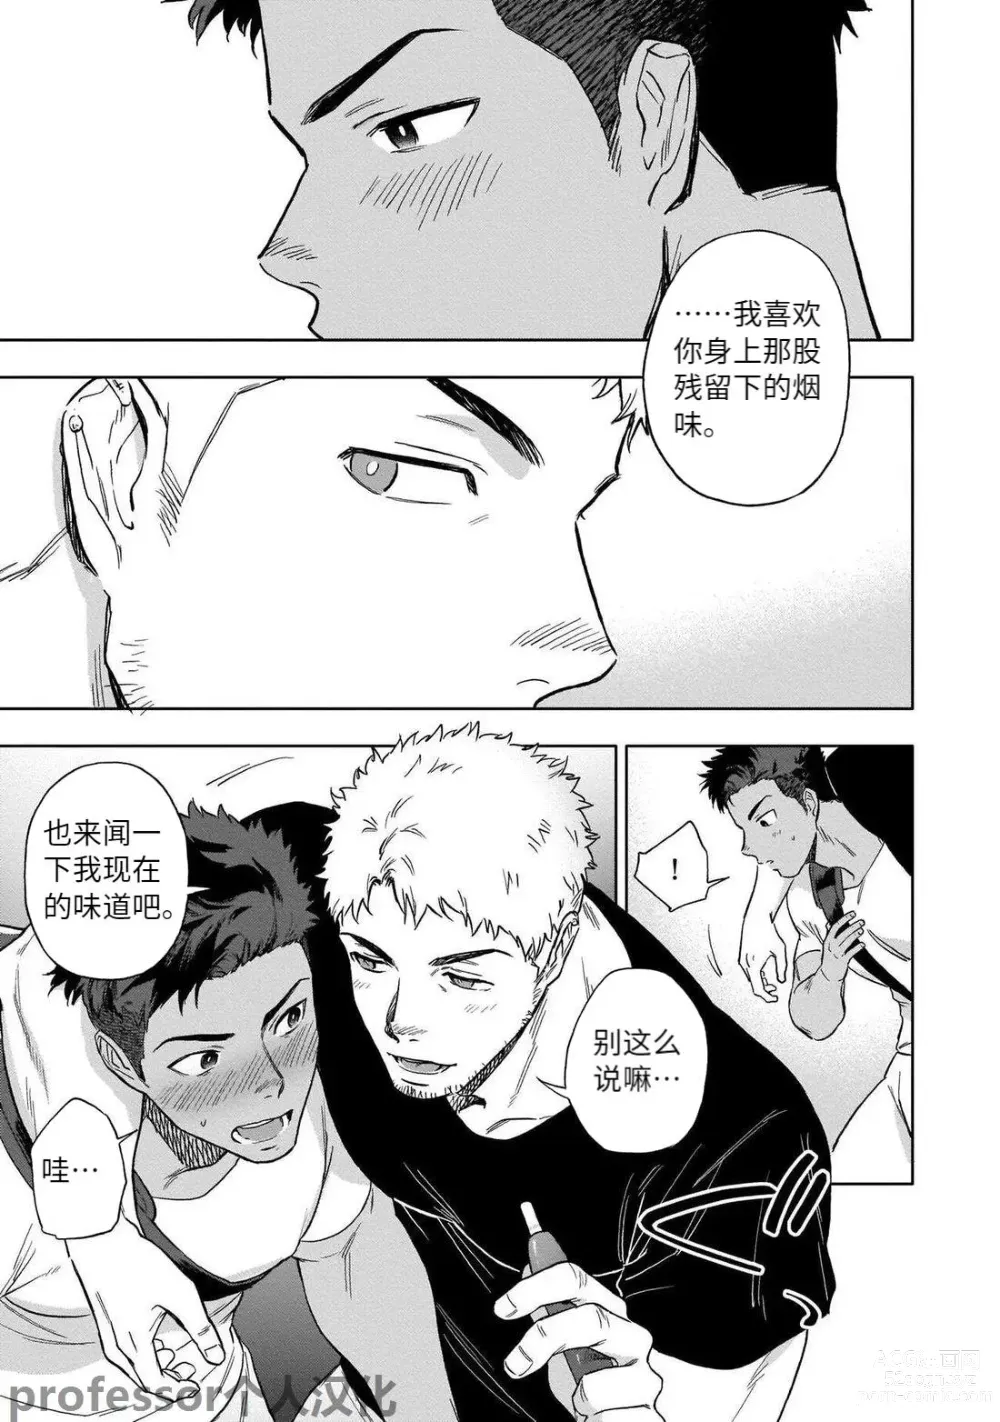 Page 7 of manga HIDK